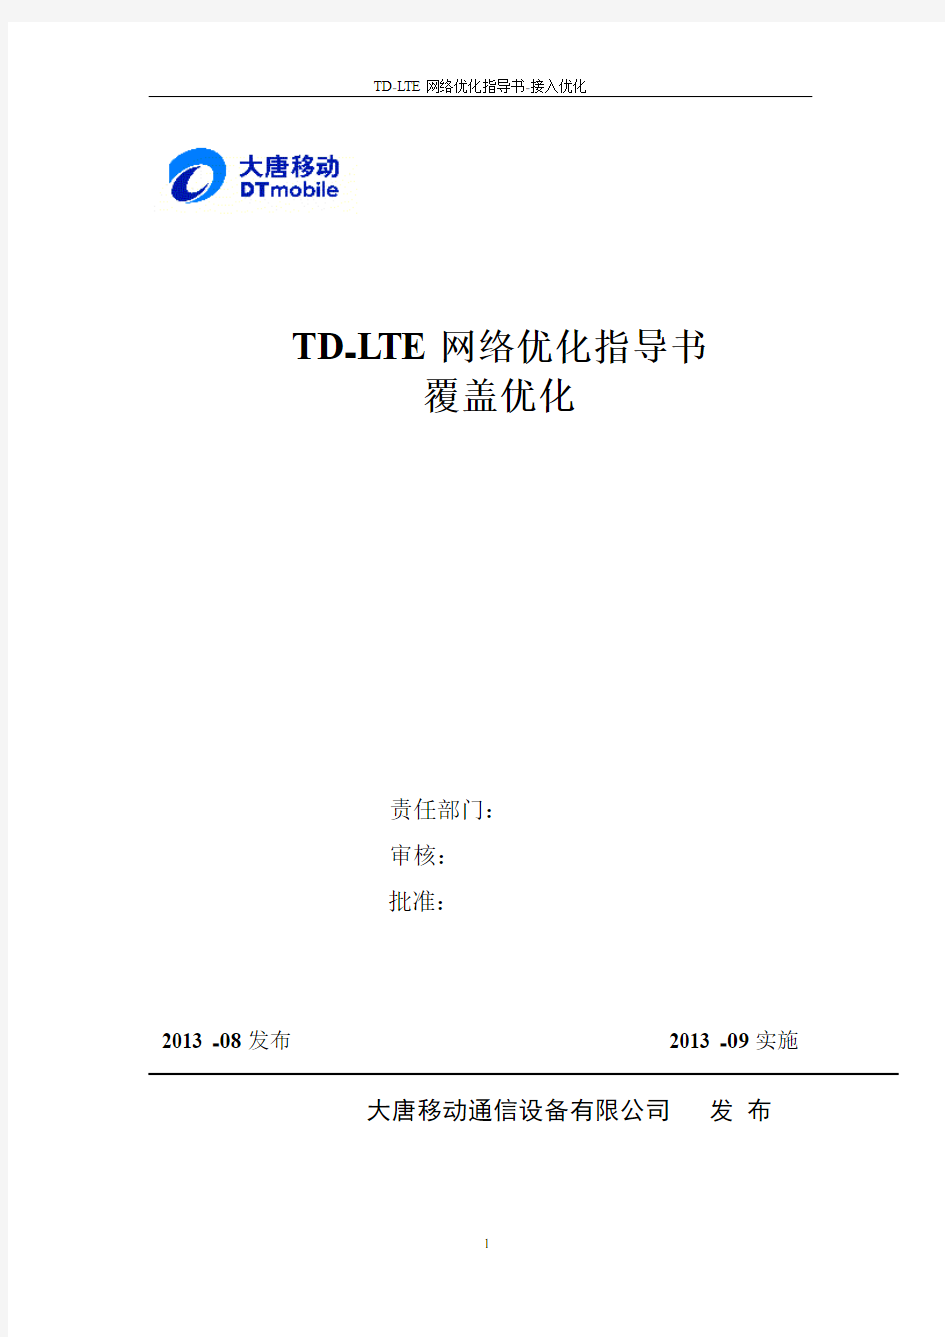 TD-LTE网络优化指导书-覆盖优化